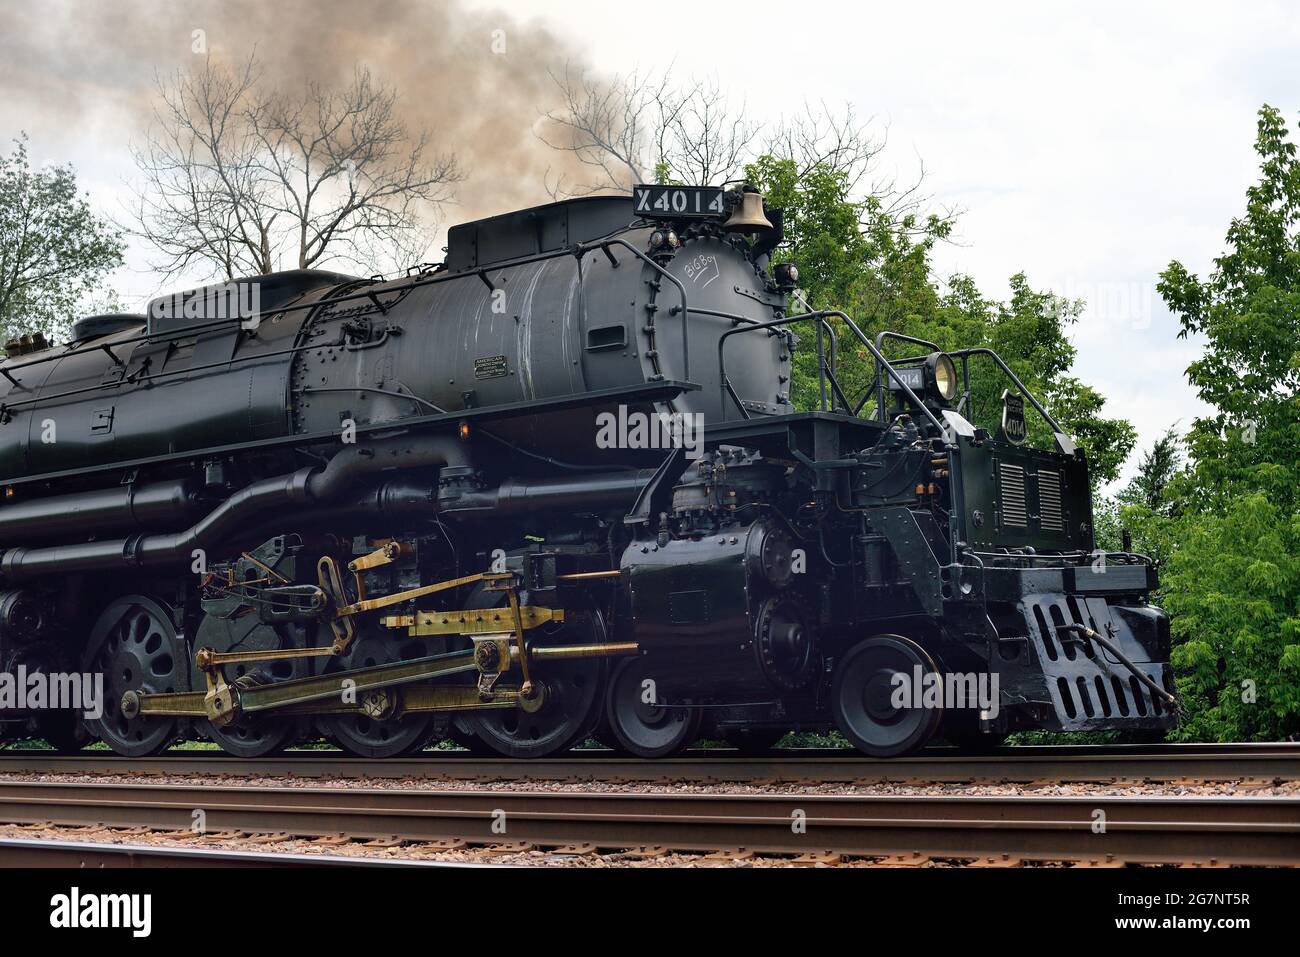 Winfield, Illinois, Stati Uniti. La più grande locomotiva a vapore mai costruita, la Union Pacific Railroad "Big Boy" che attraversa i sobborghi di Chicago. Foto Stock